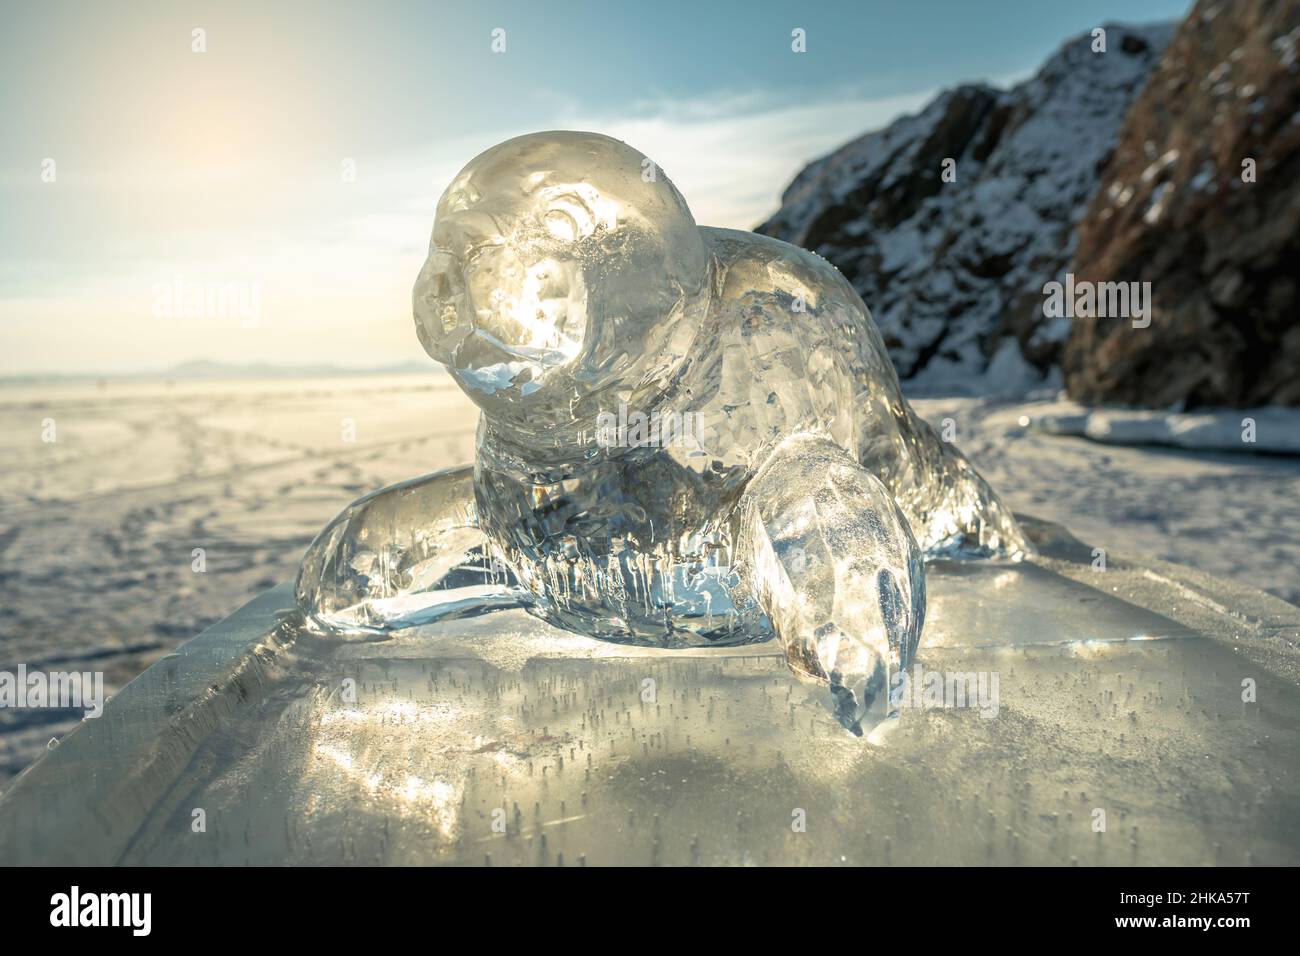 Sculpture transparente sur glace d'un sceau dans les rayons du soleil.L'art d'hiver est l'art de la nature sur le lac Baikal. Banque D'Images